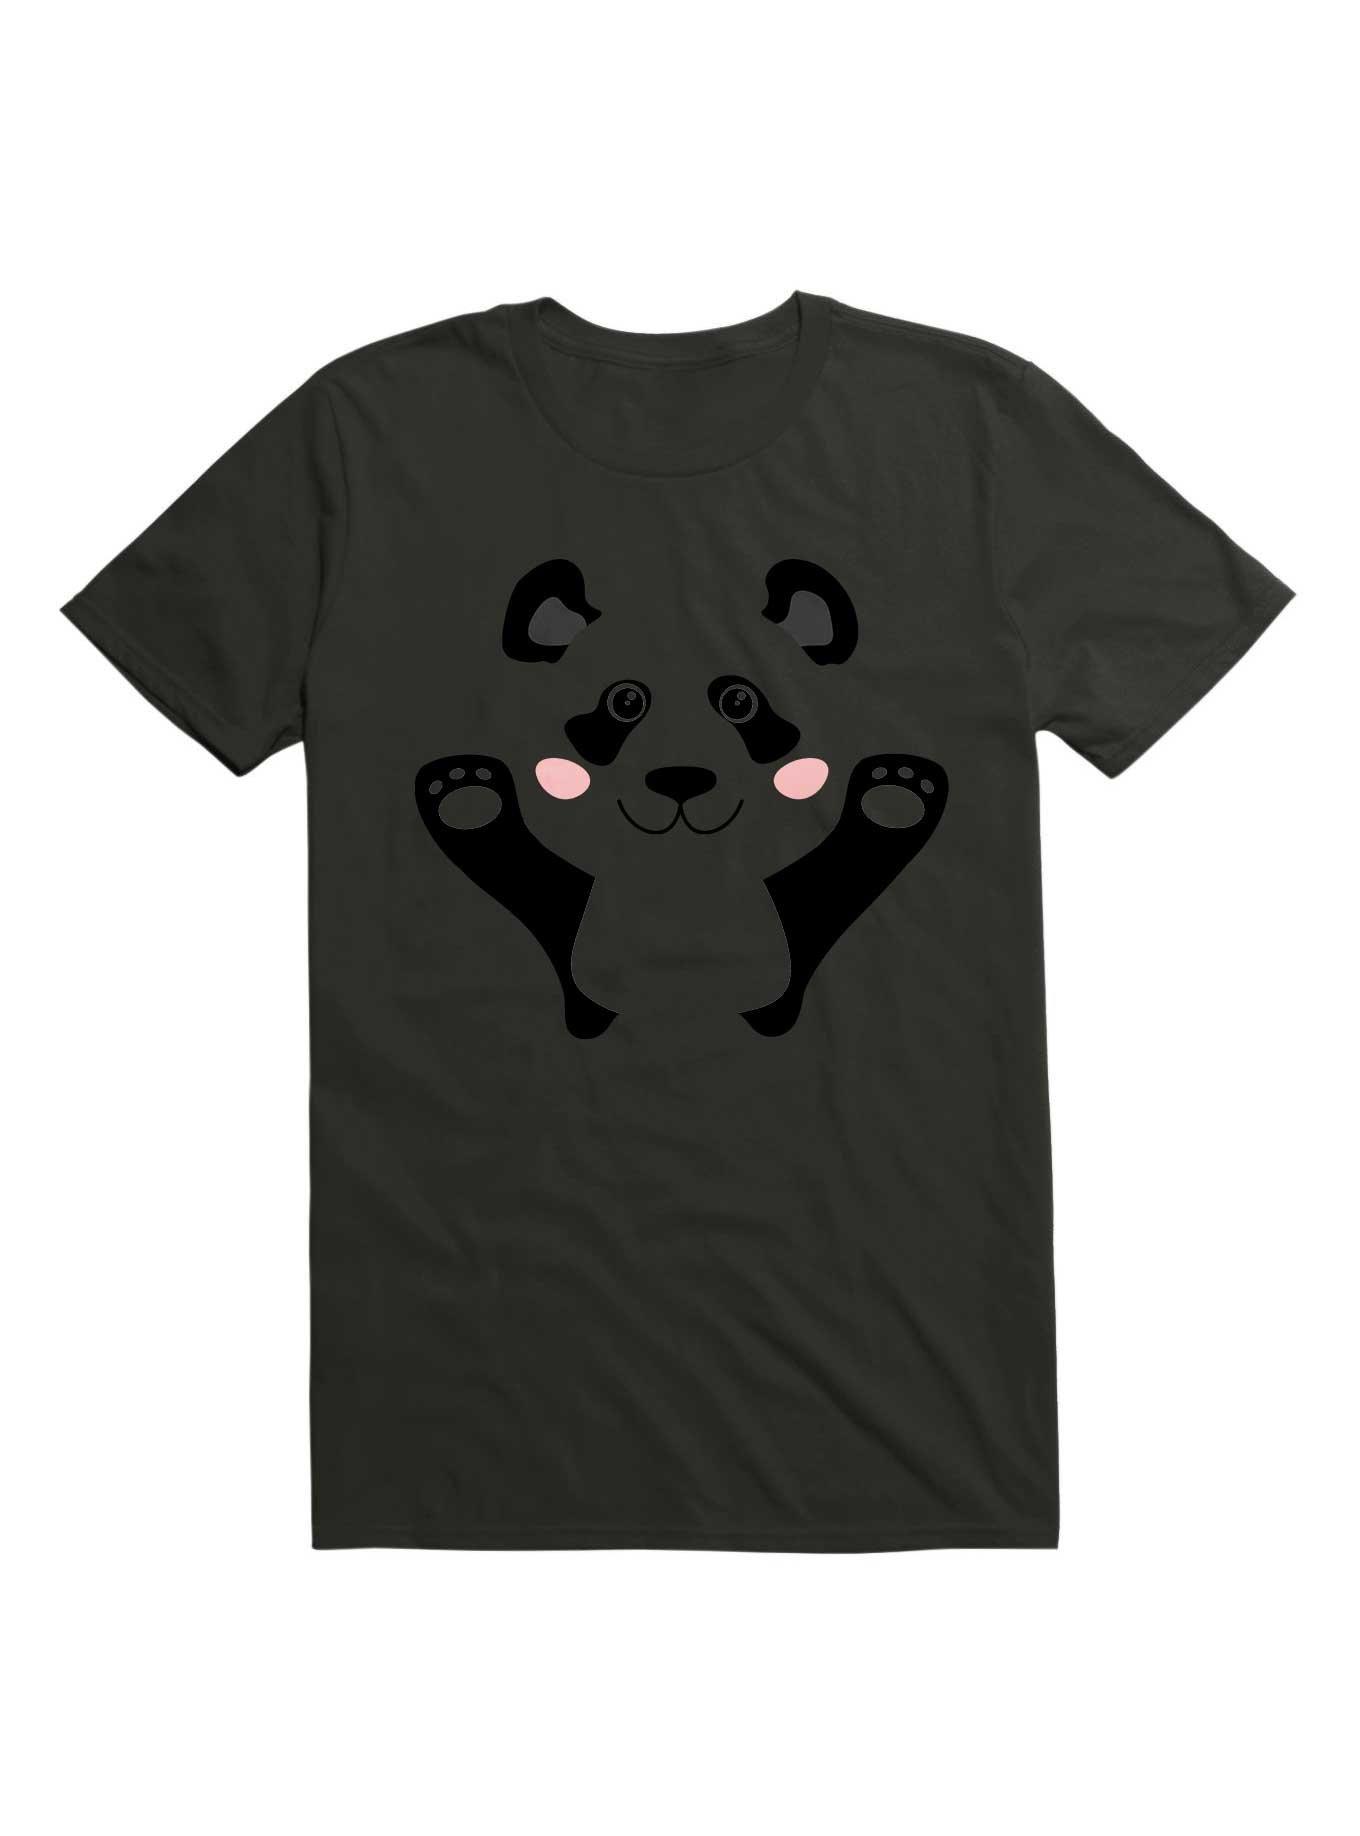 Kawaii My Cute Panda Face T-Shirt